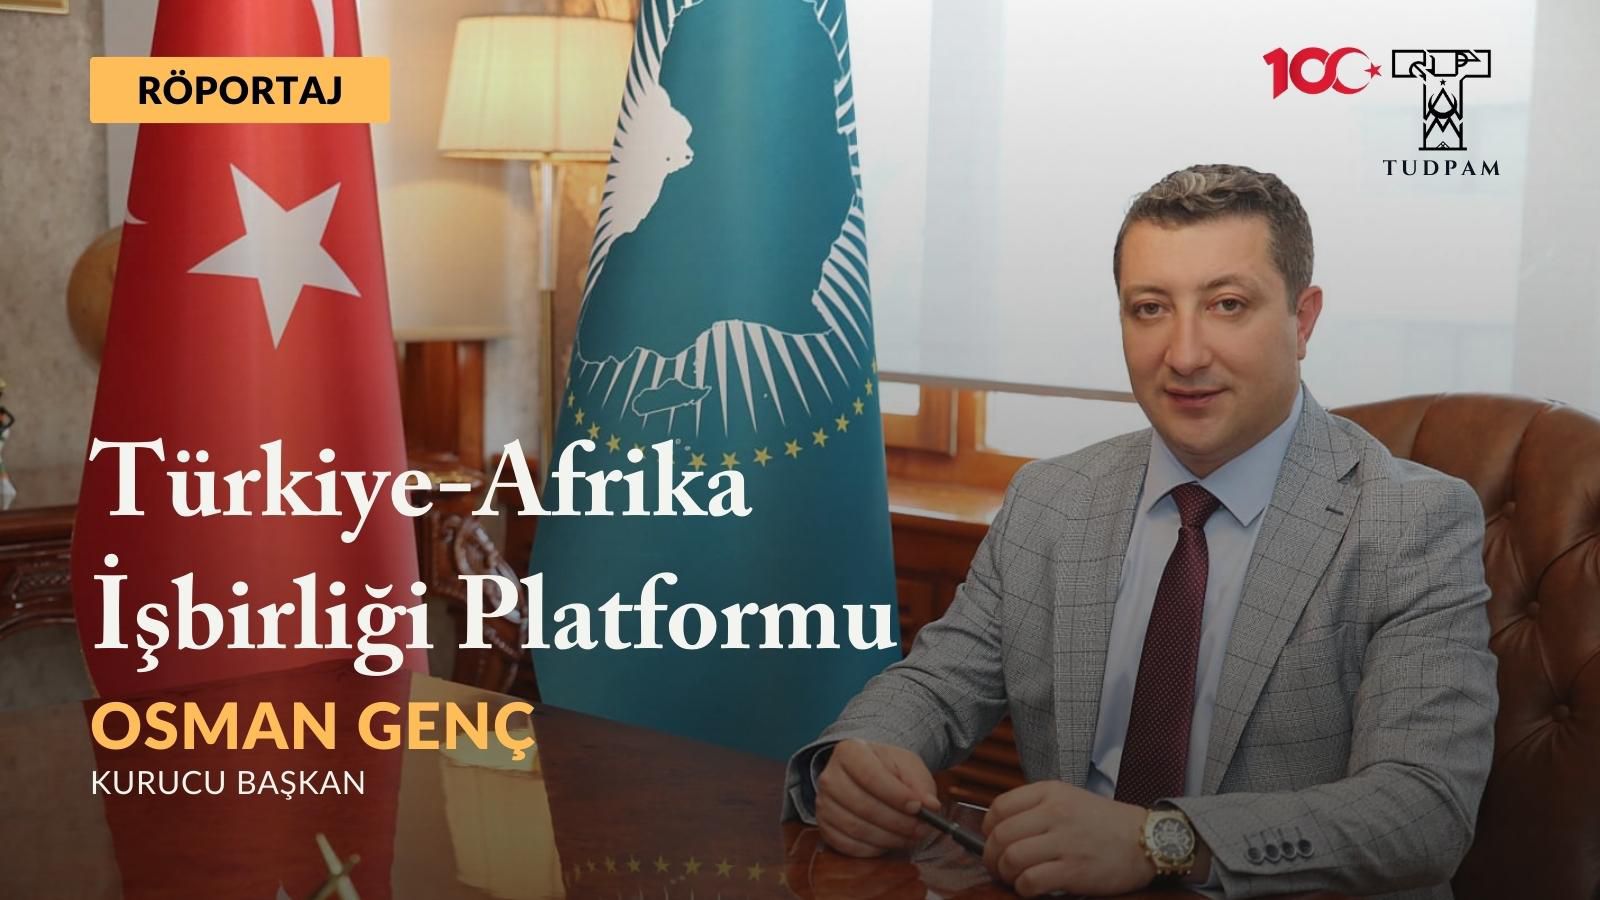 Röportaj: “Afrika’da Türkiye’nin Nüfuzu Üzerine” – Türkiye-Afrika İşbirliği Platformu Kurucu Başkanı Sn. Osman Genç